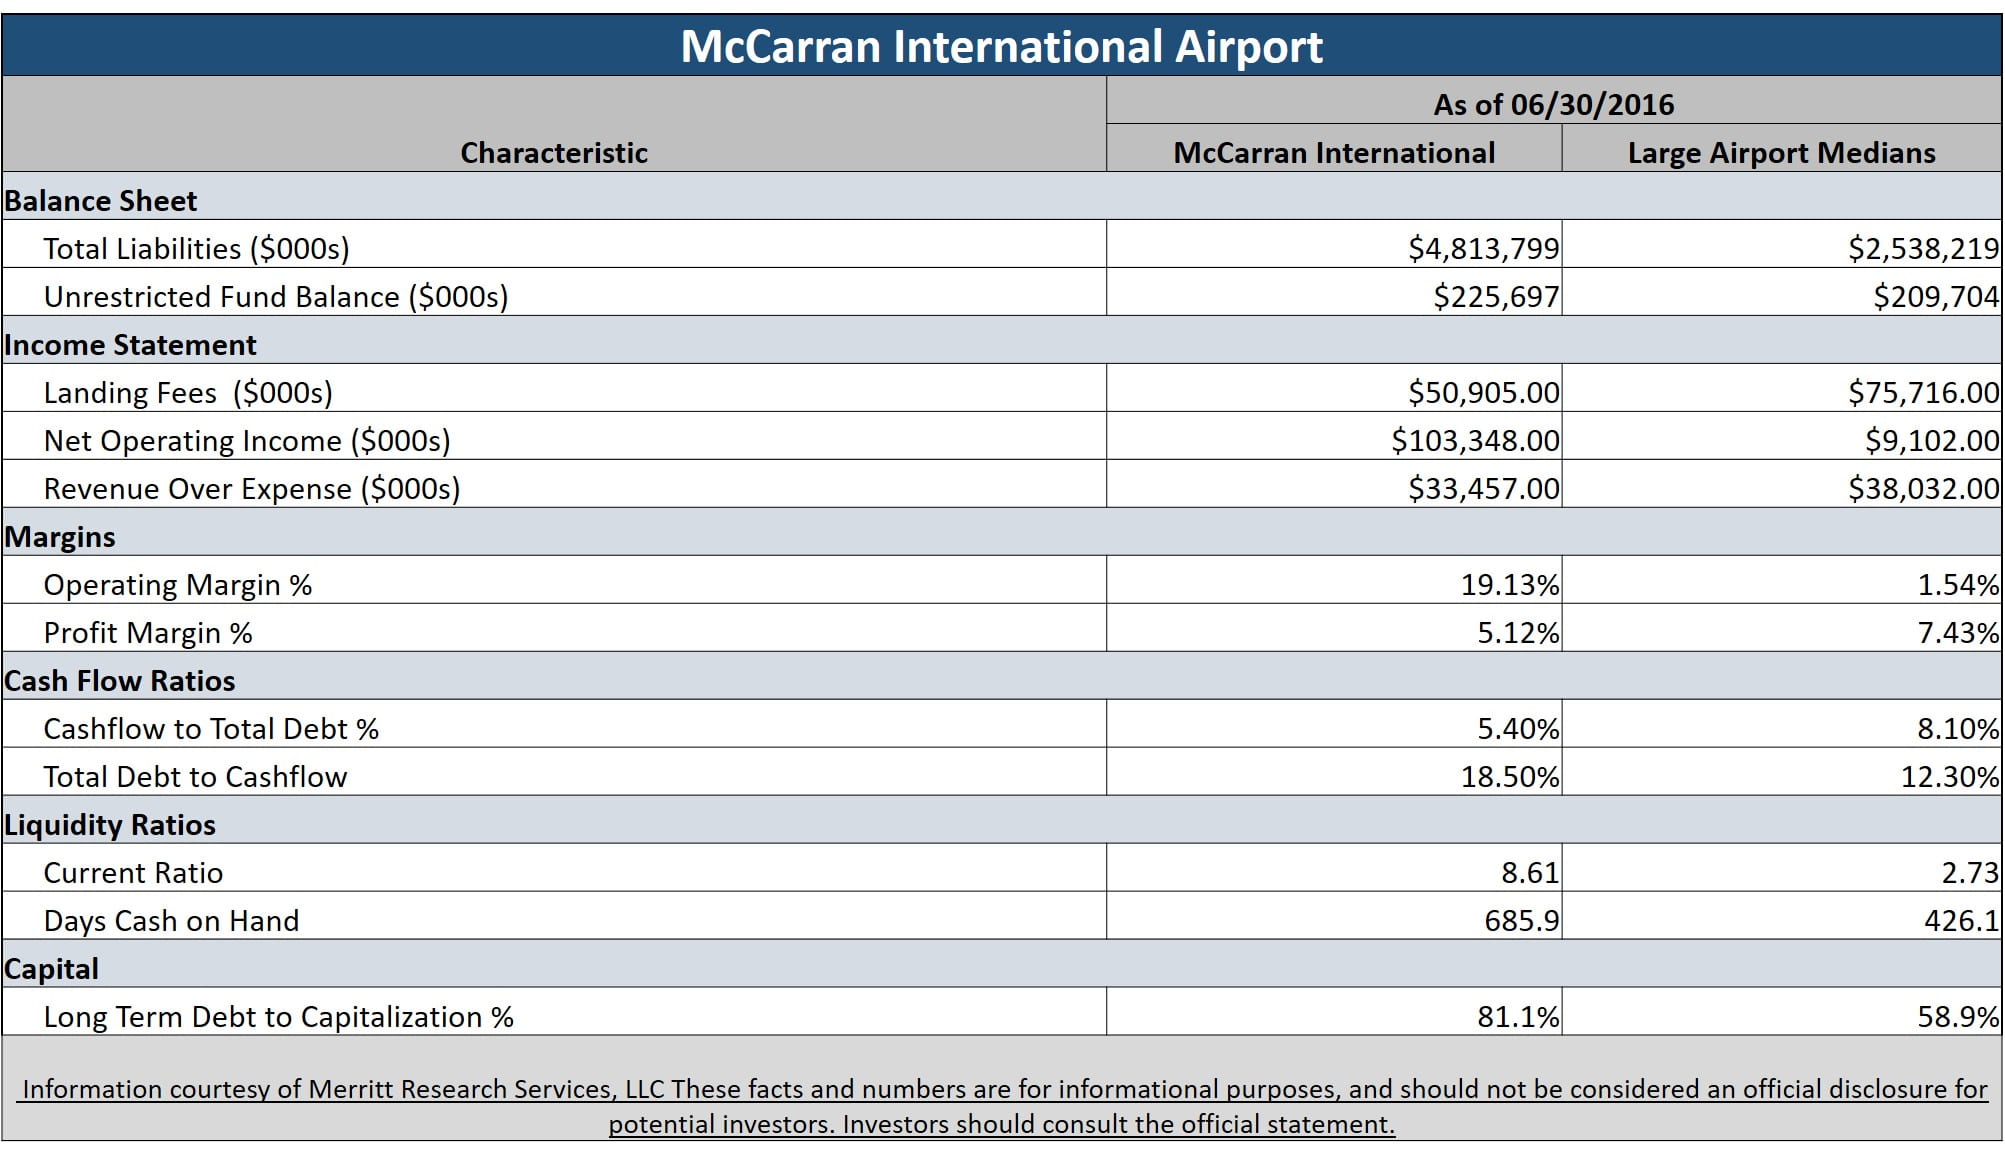 Municipal Bond Featured Snapshot - McCann International Airport